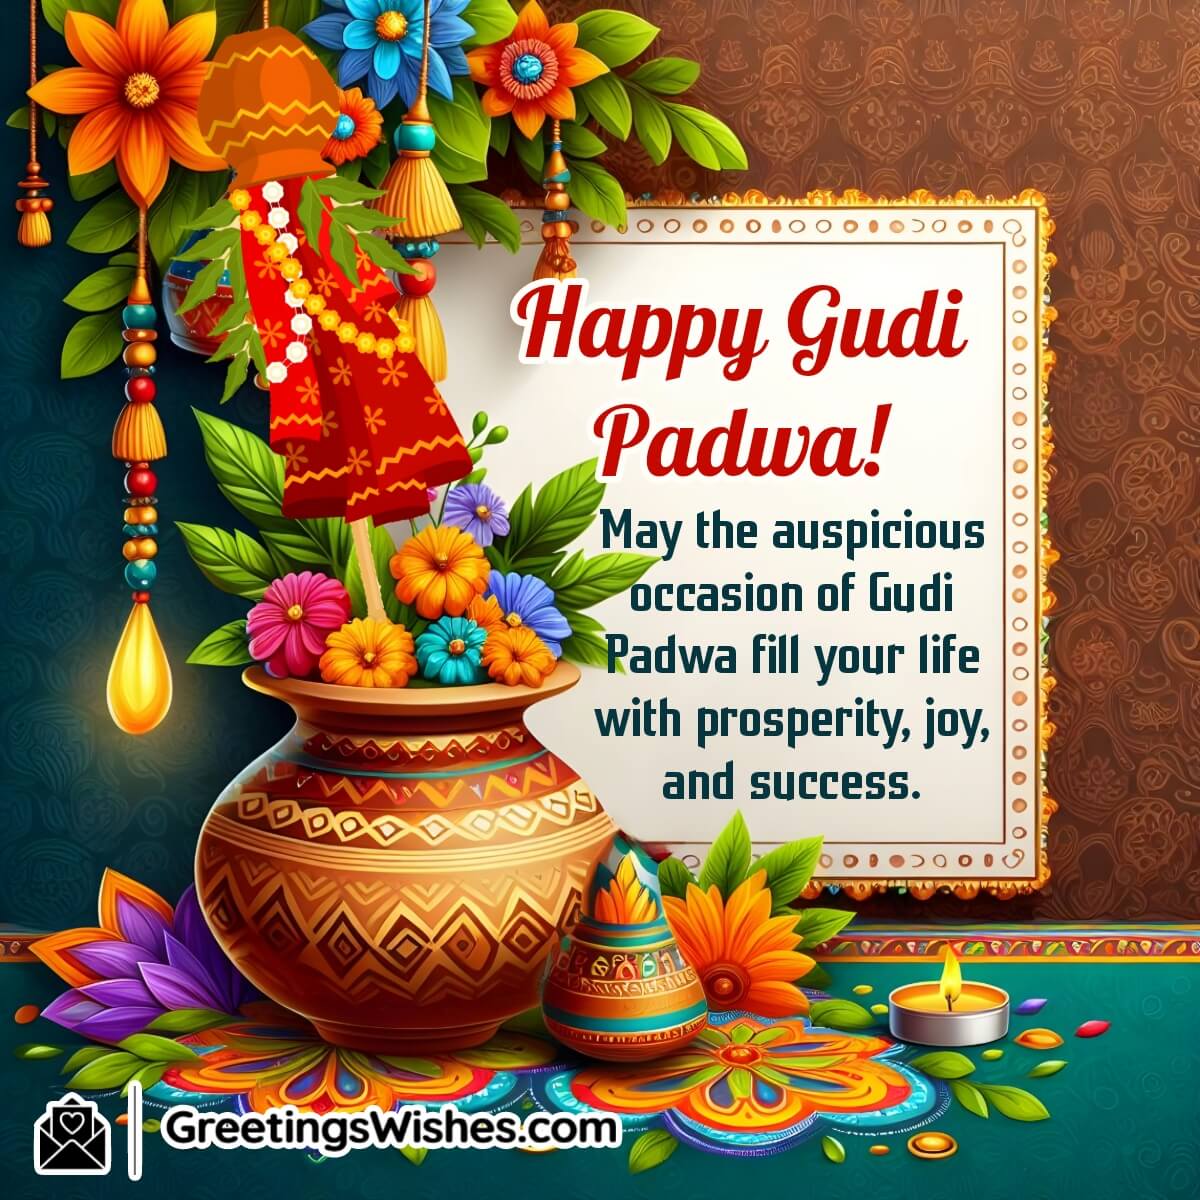 Gudi Padwa Wish Image